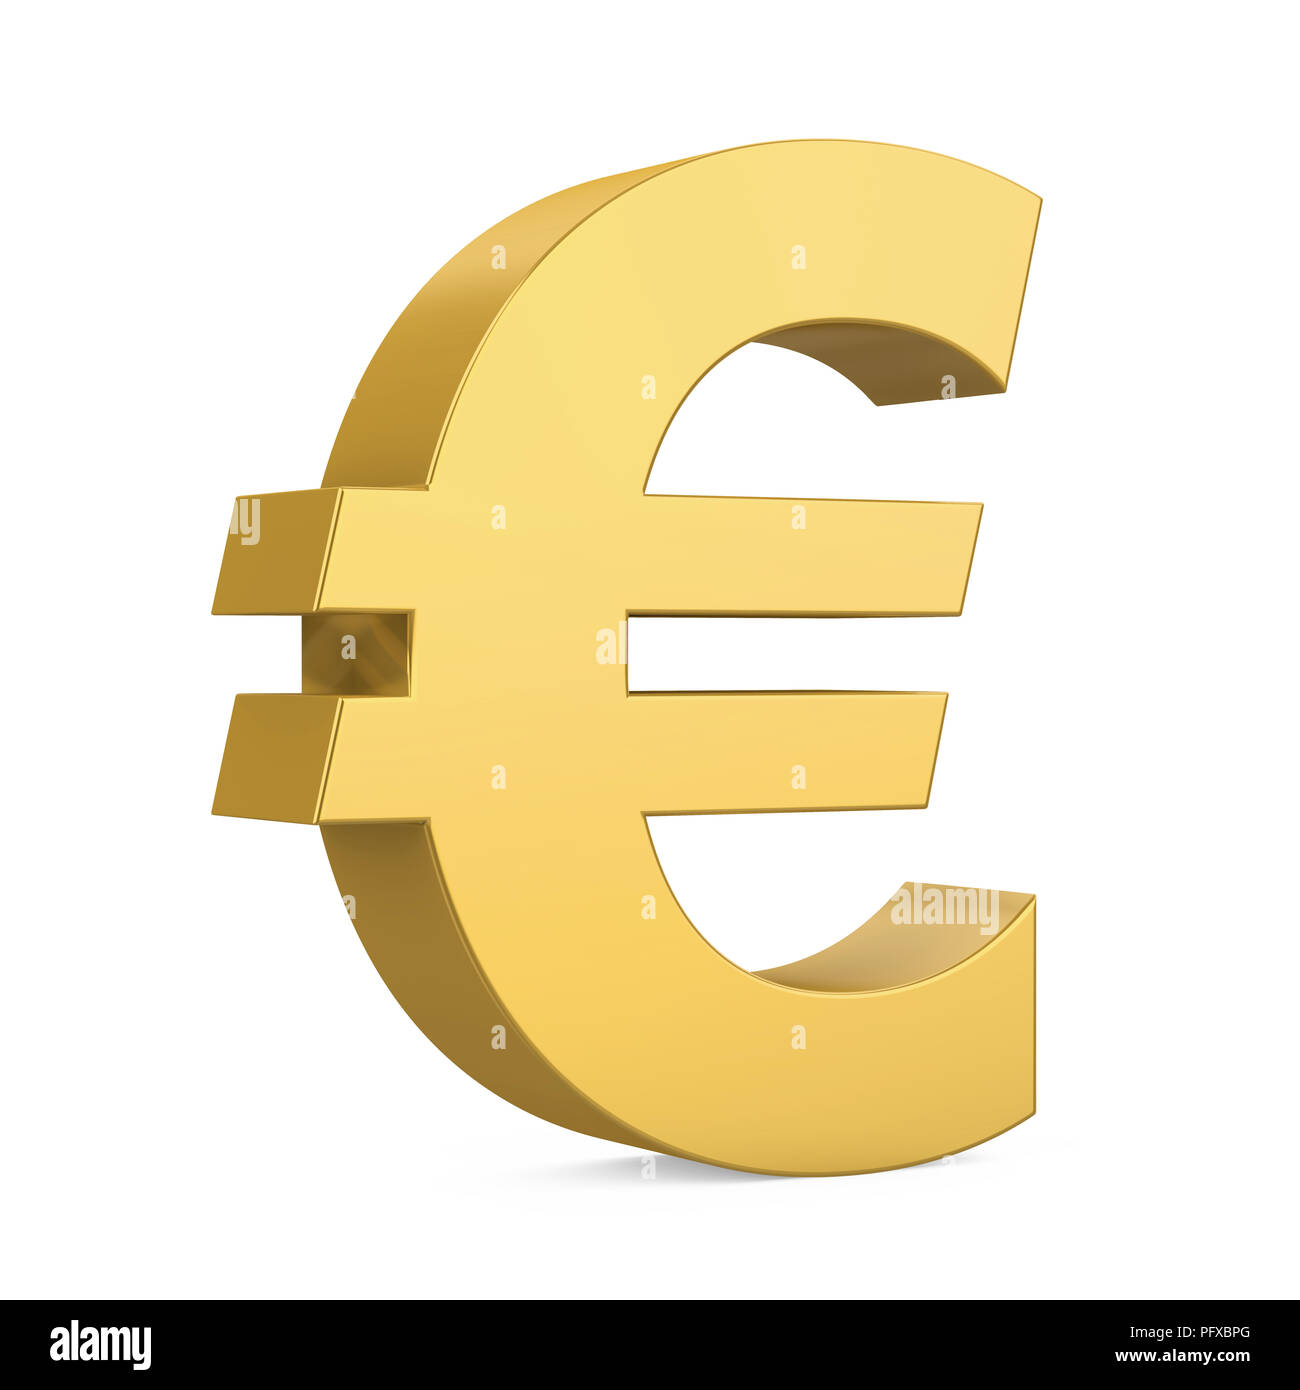 значок евро фото